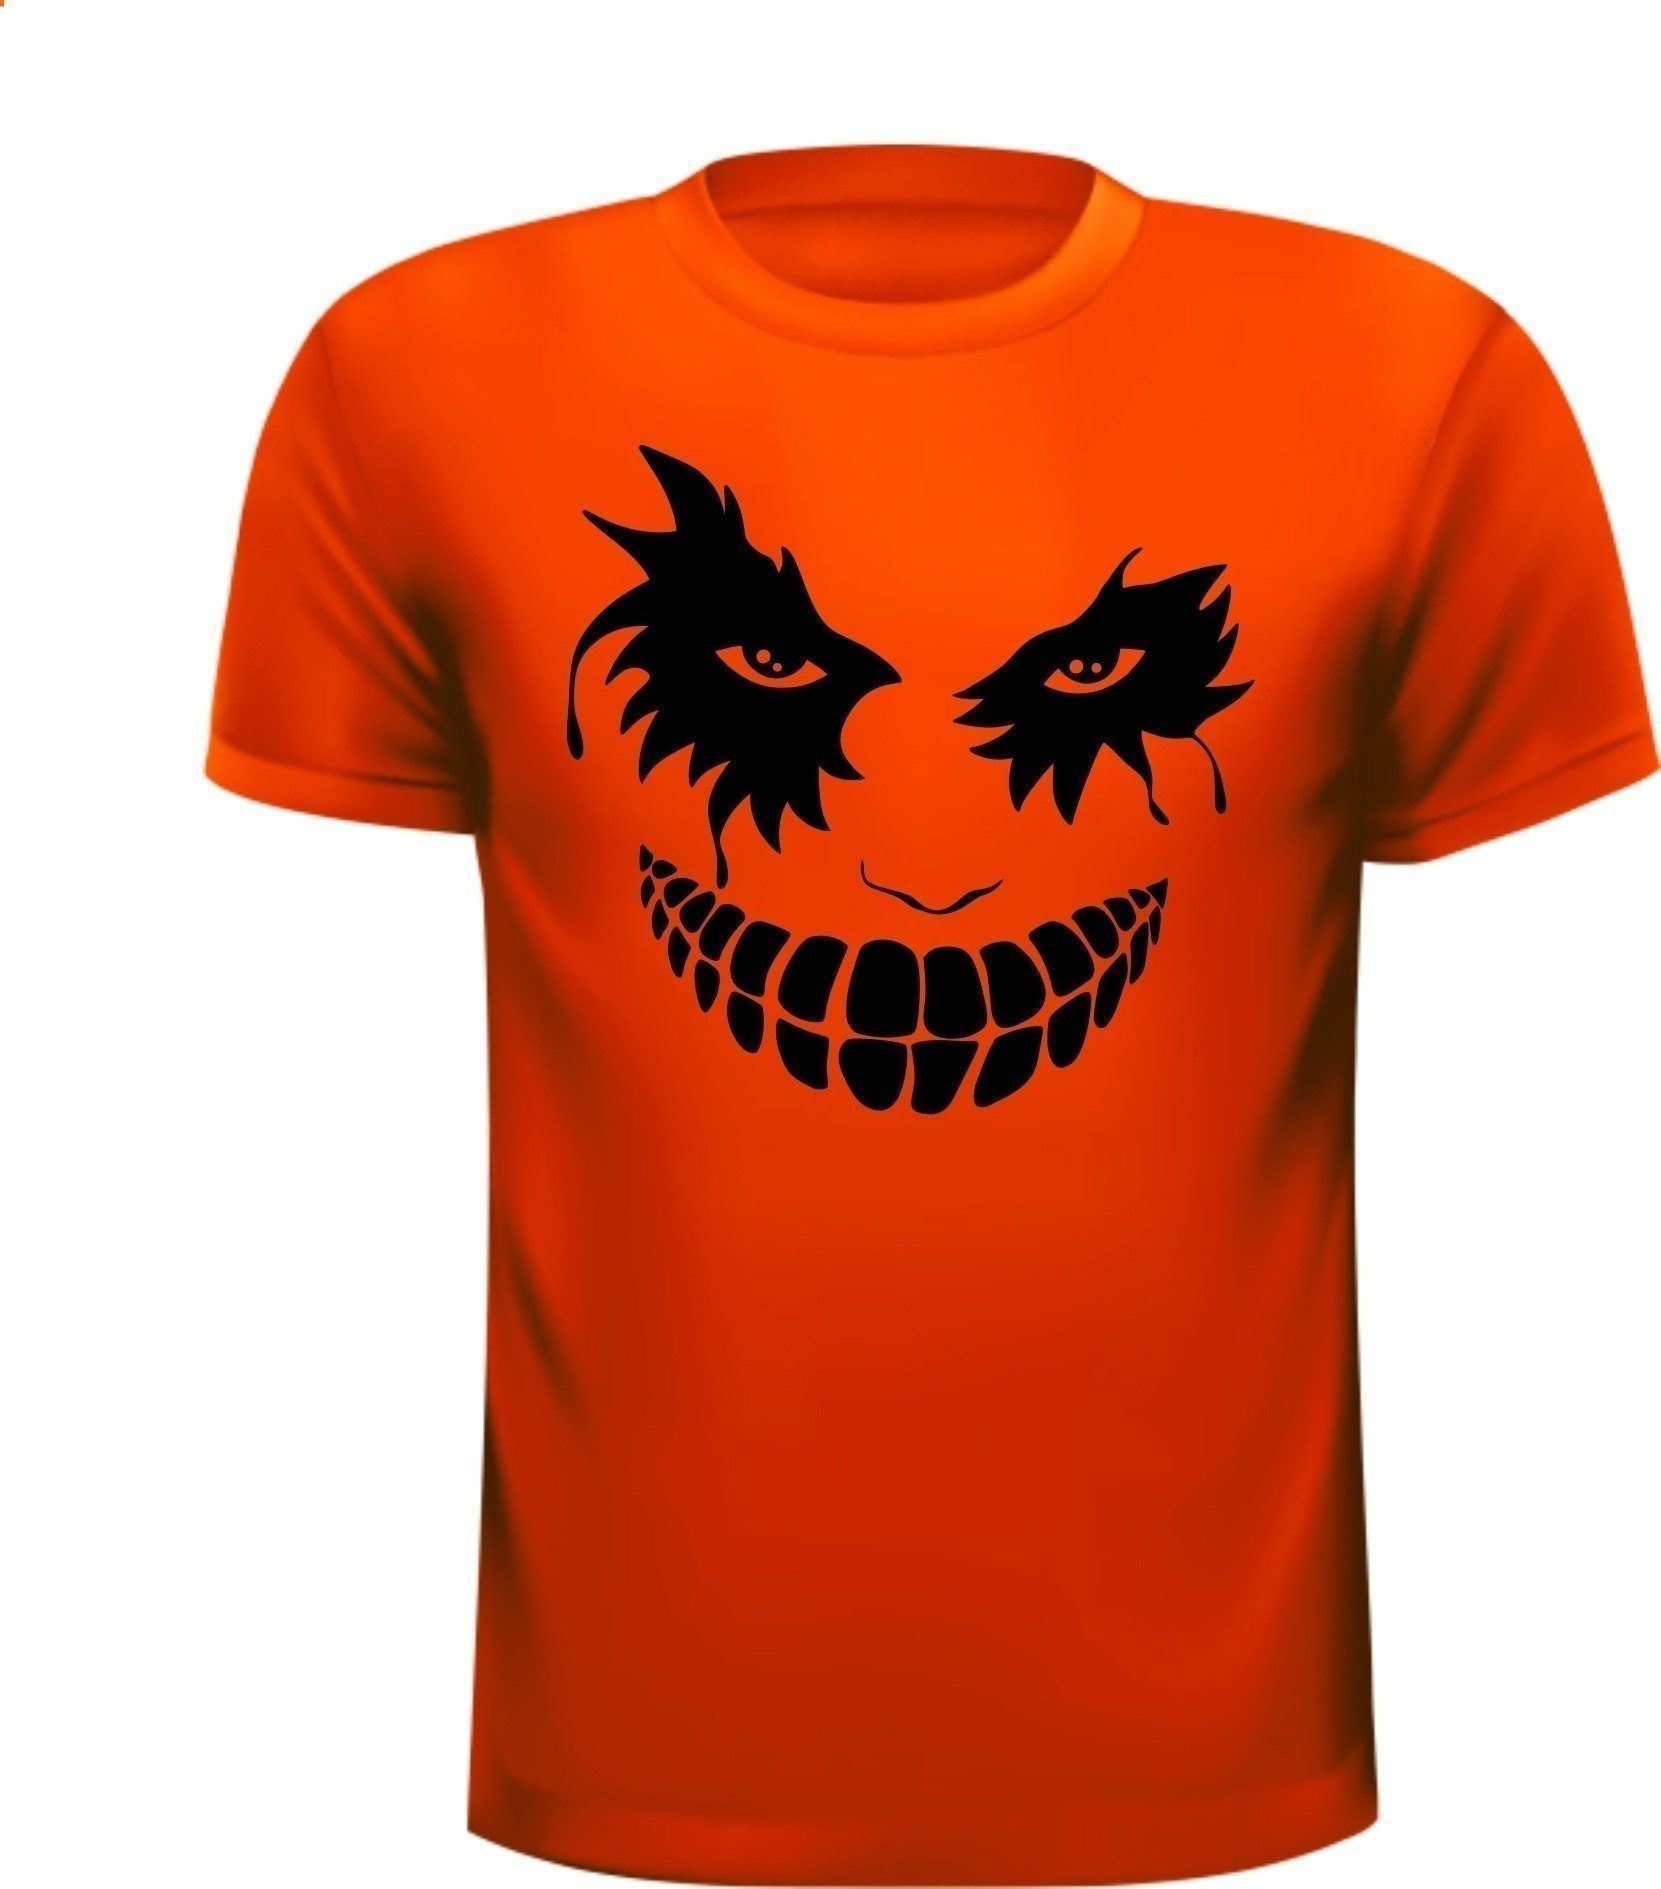 T-shirt scary face Halloween eng gezicht